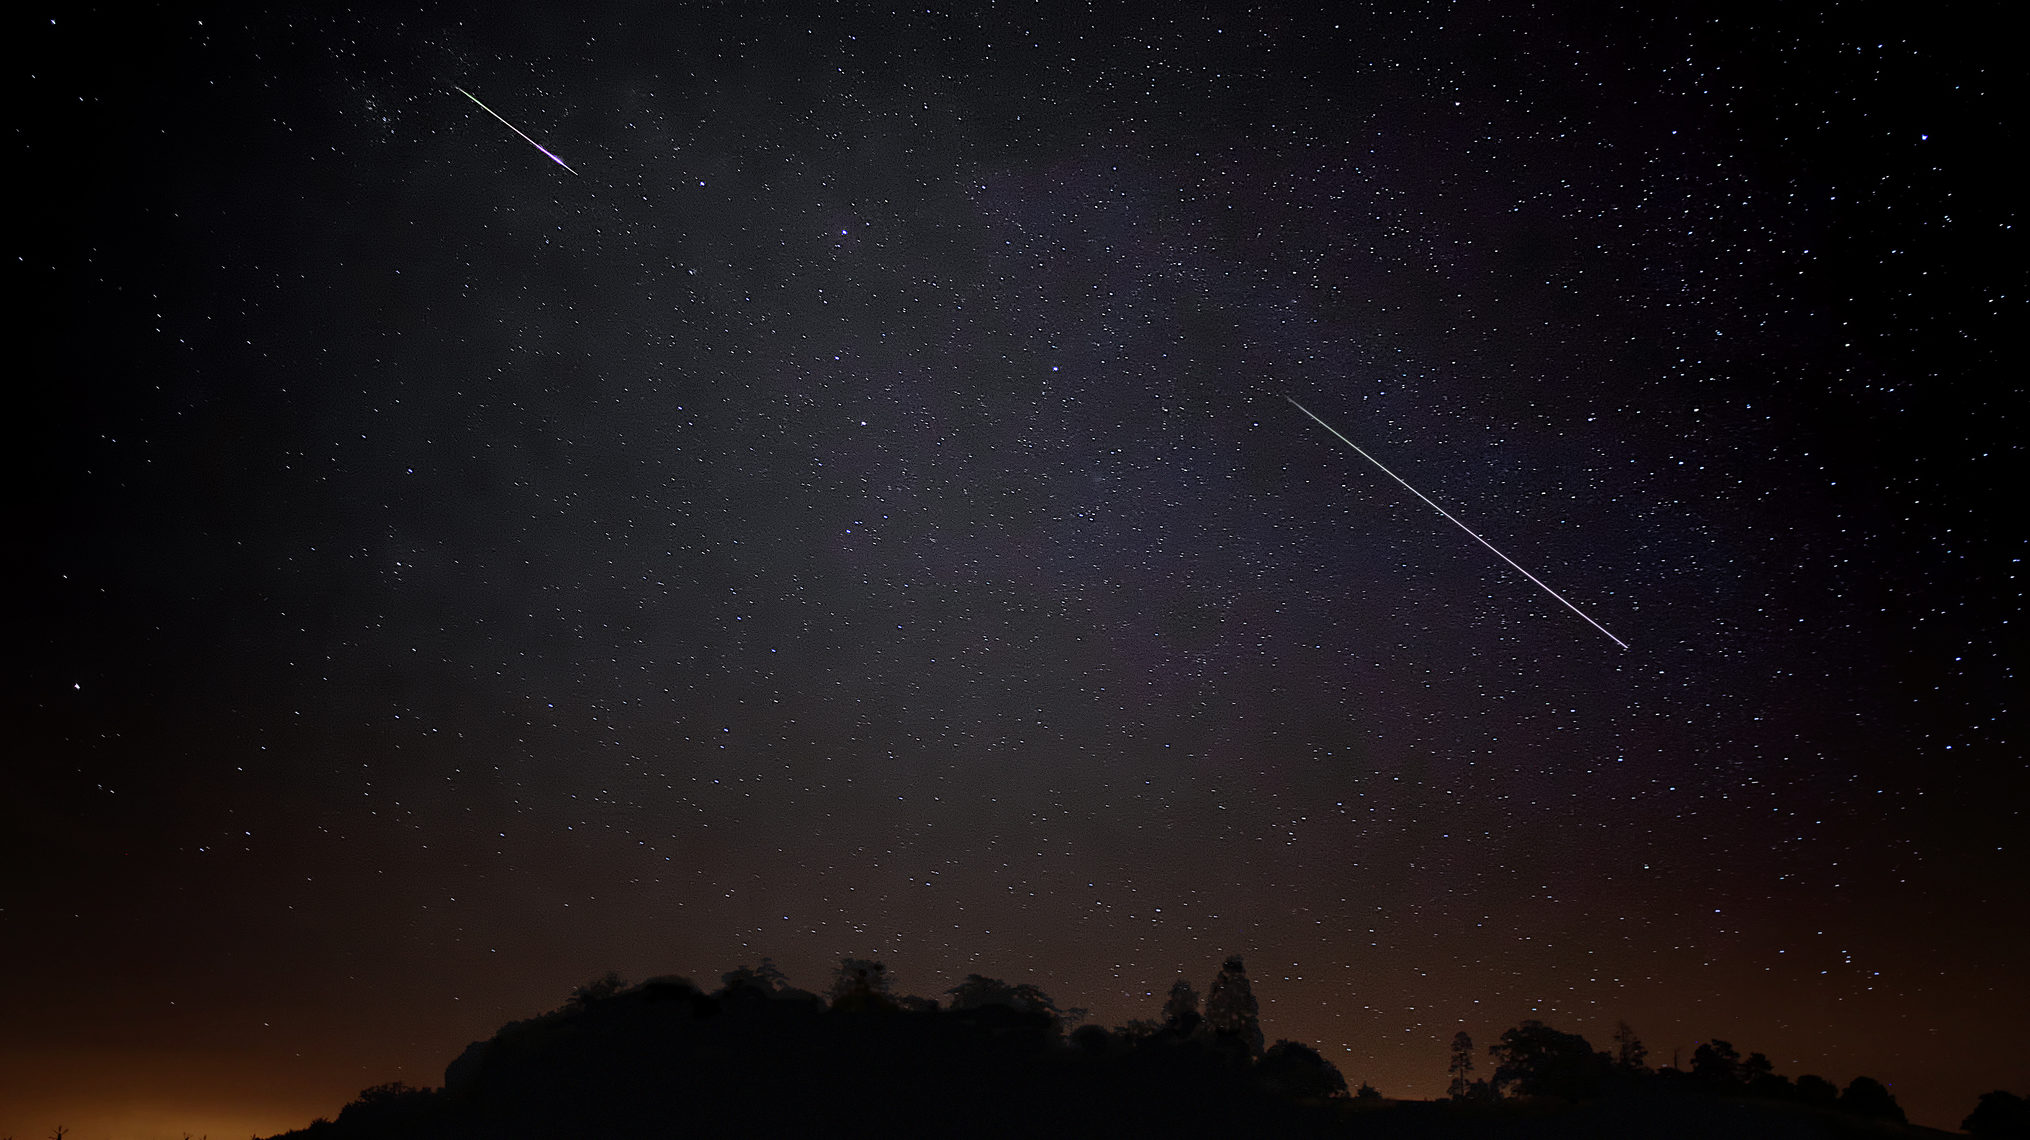 Hamarosan kezdődik az év egyik leglátványosabb meteorhullása